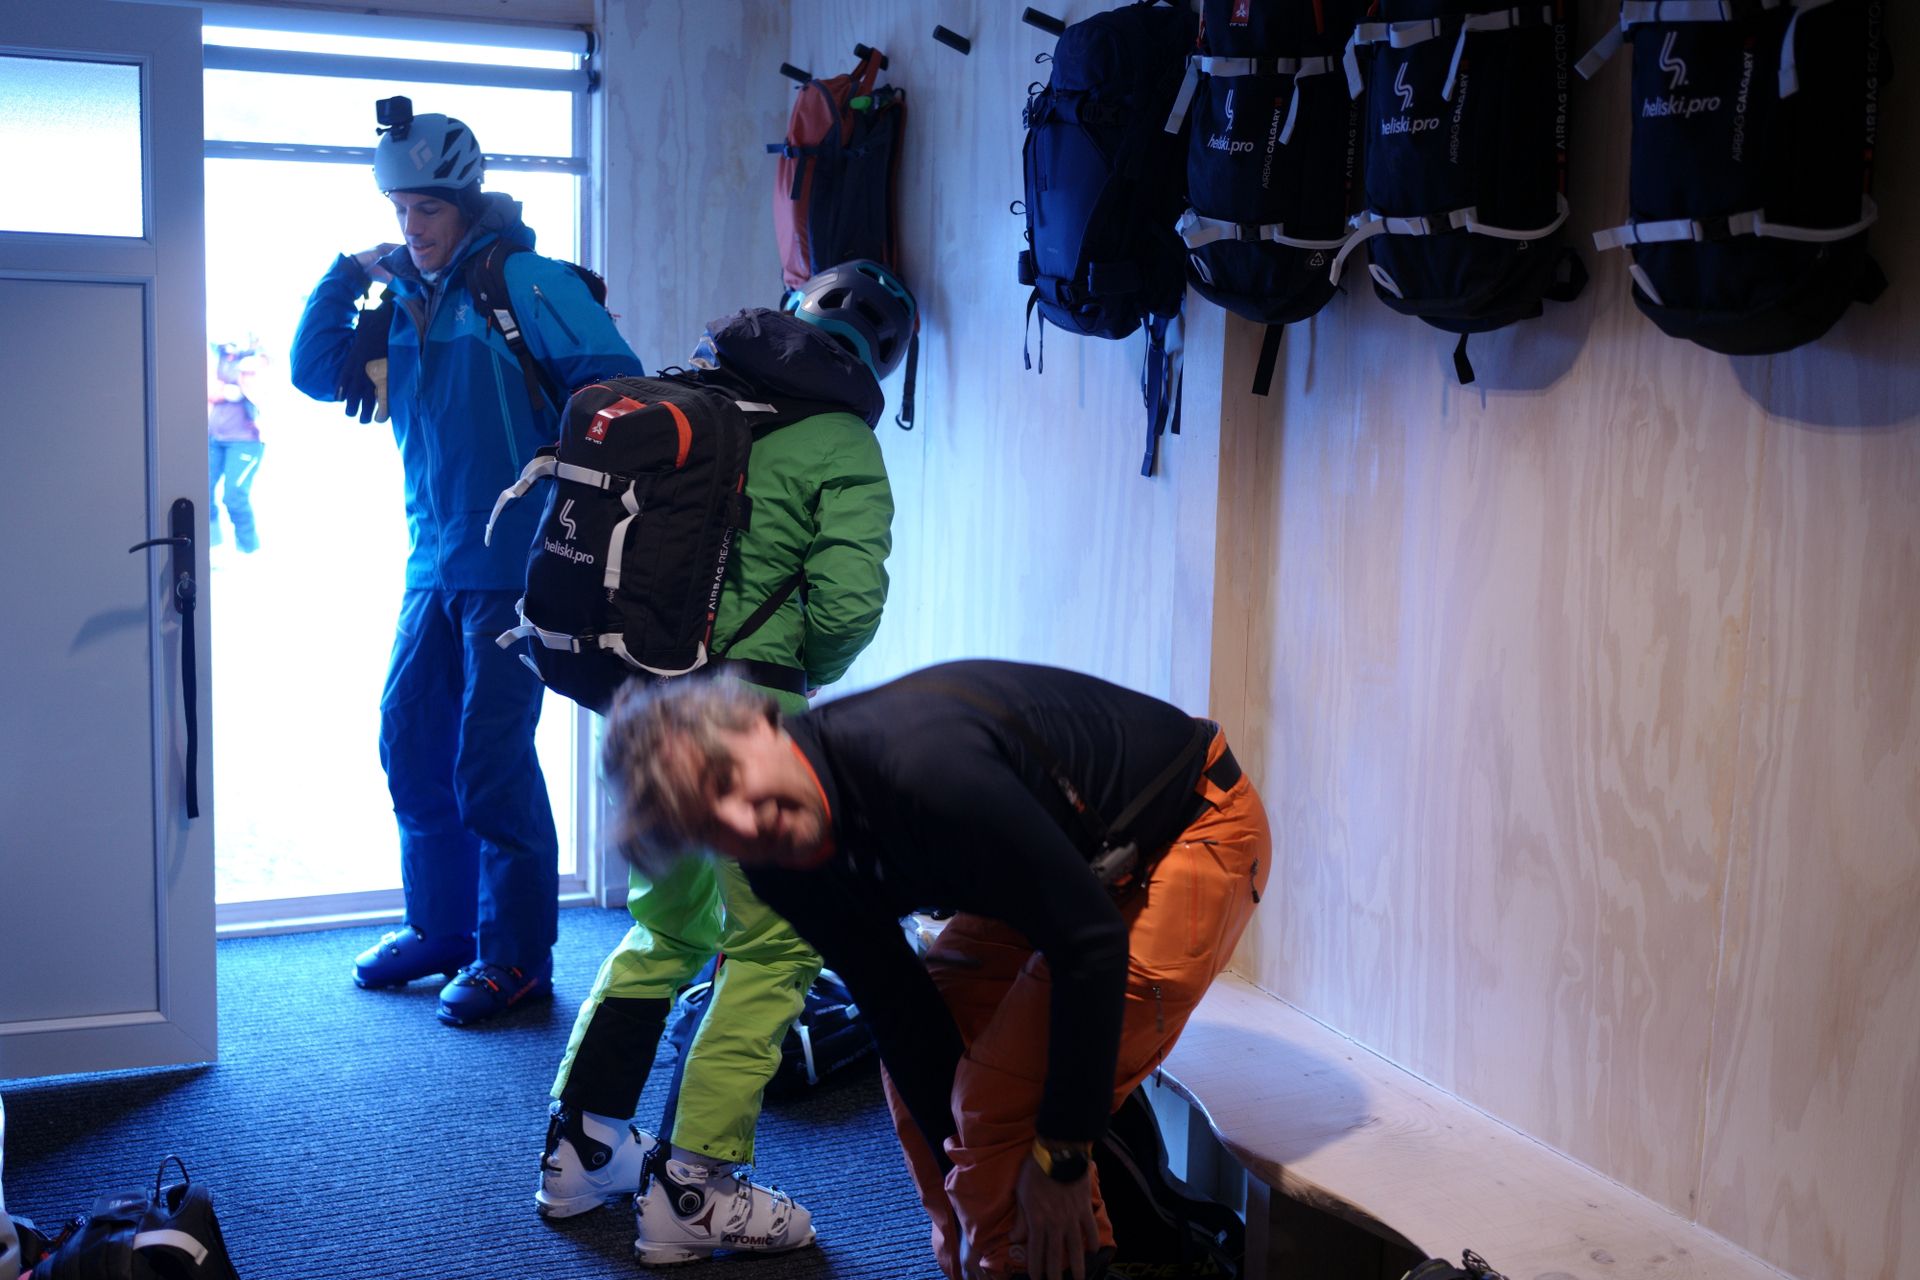 Sala de preparación. Mochilas ABS para todos los esquiadores; DVA y resto de elementos de seguridad preparados.